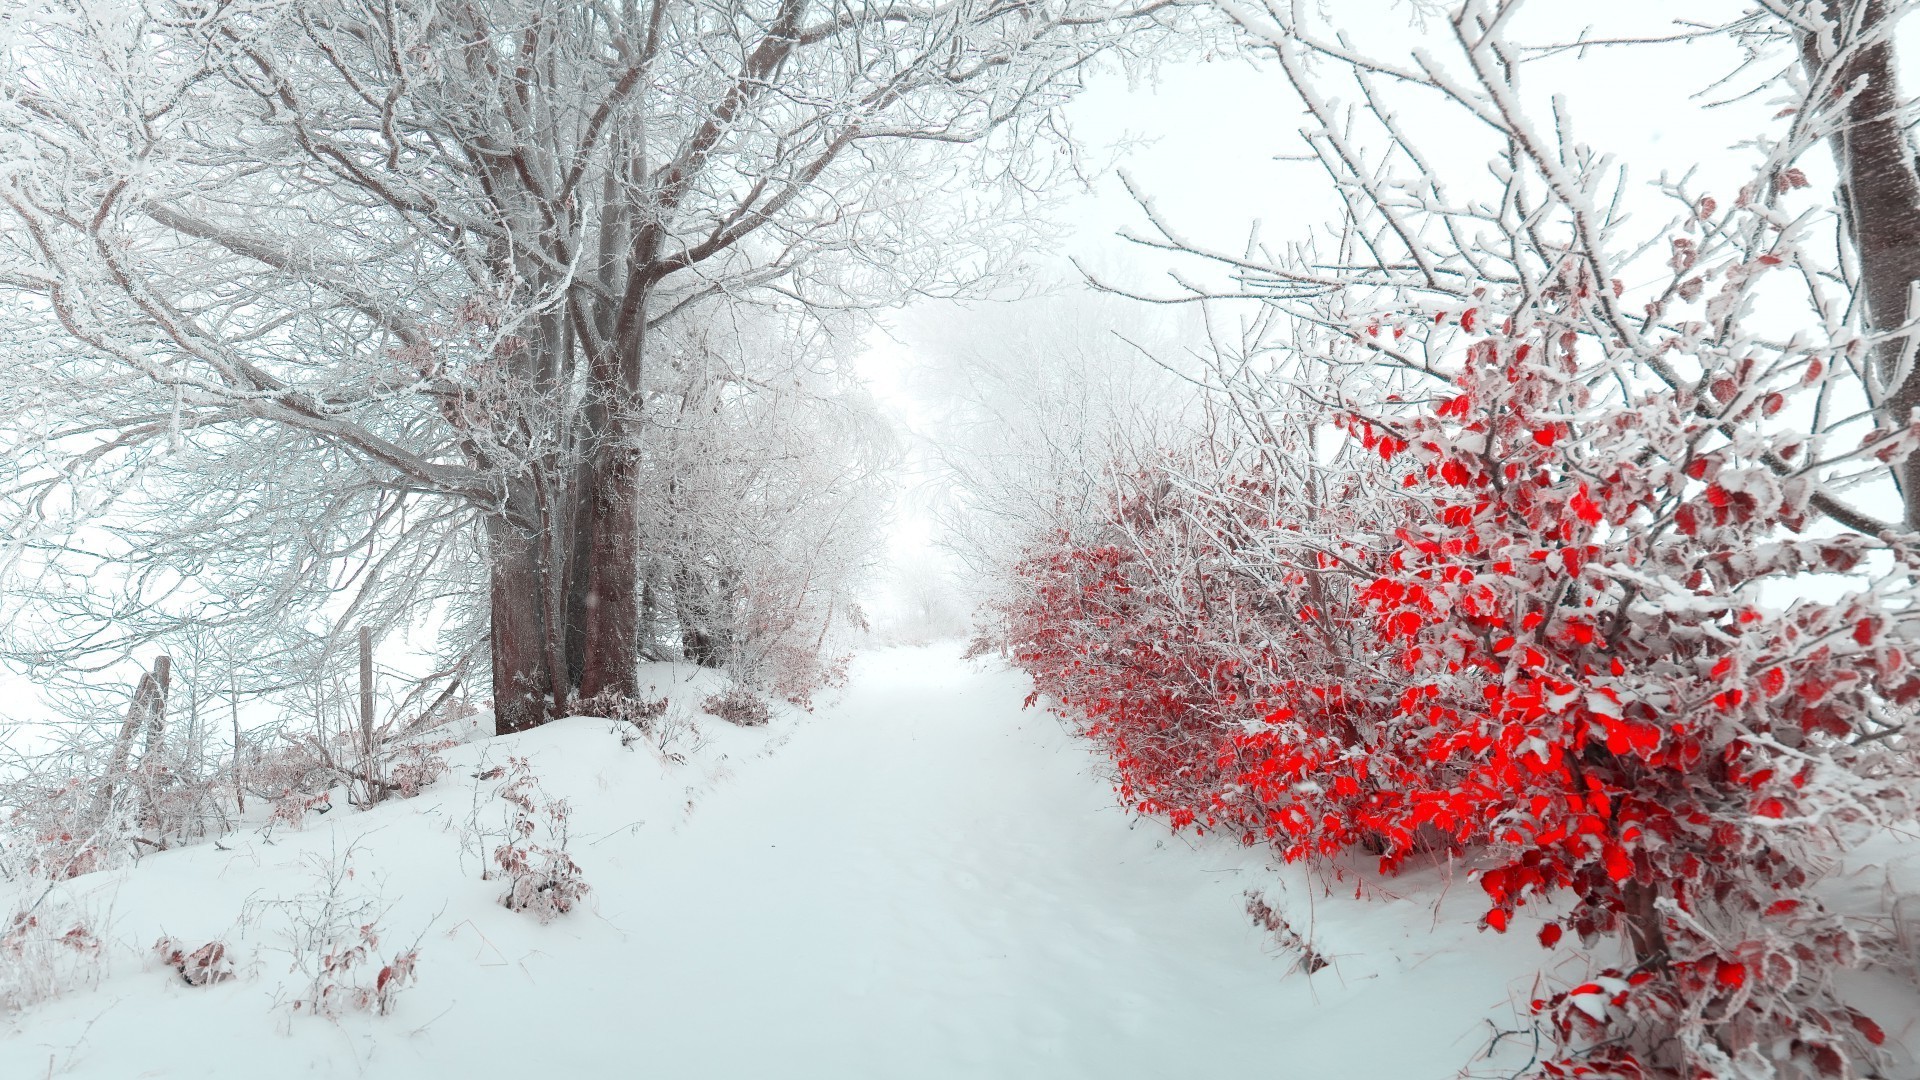 зима снег мороз холодная дерево замороженные филиал древесины сезон погода лед морозный пейзаж пургу снег-белый туман живописный снежное